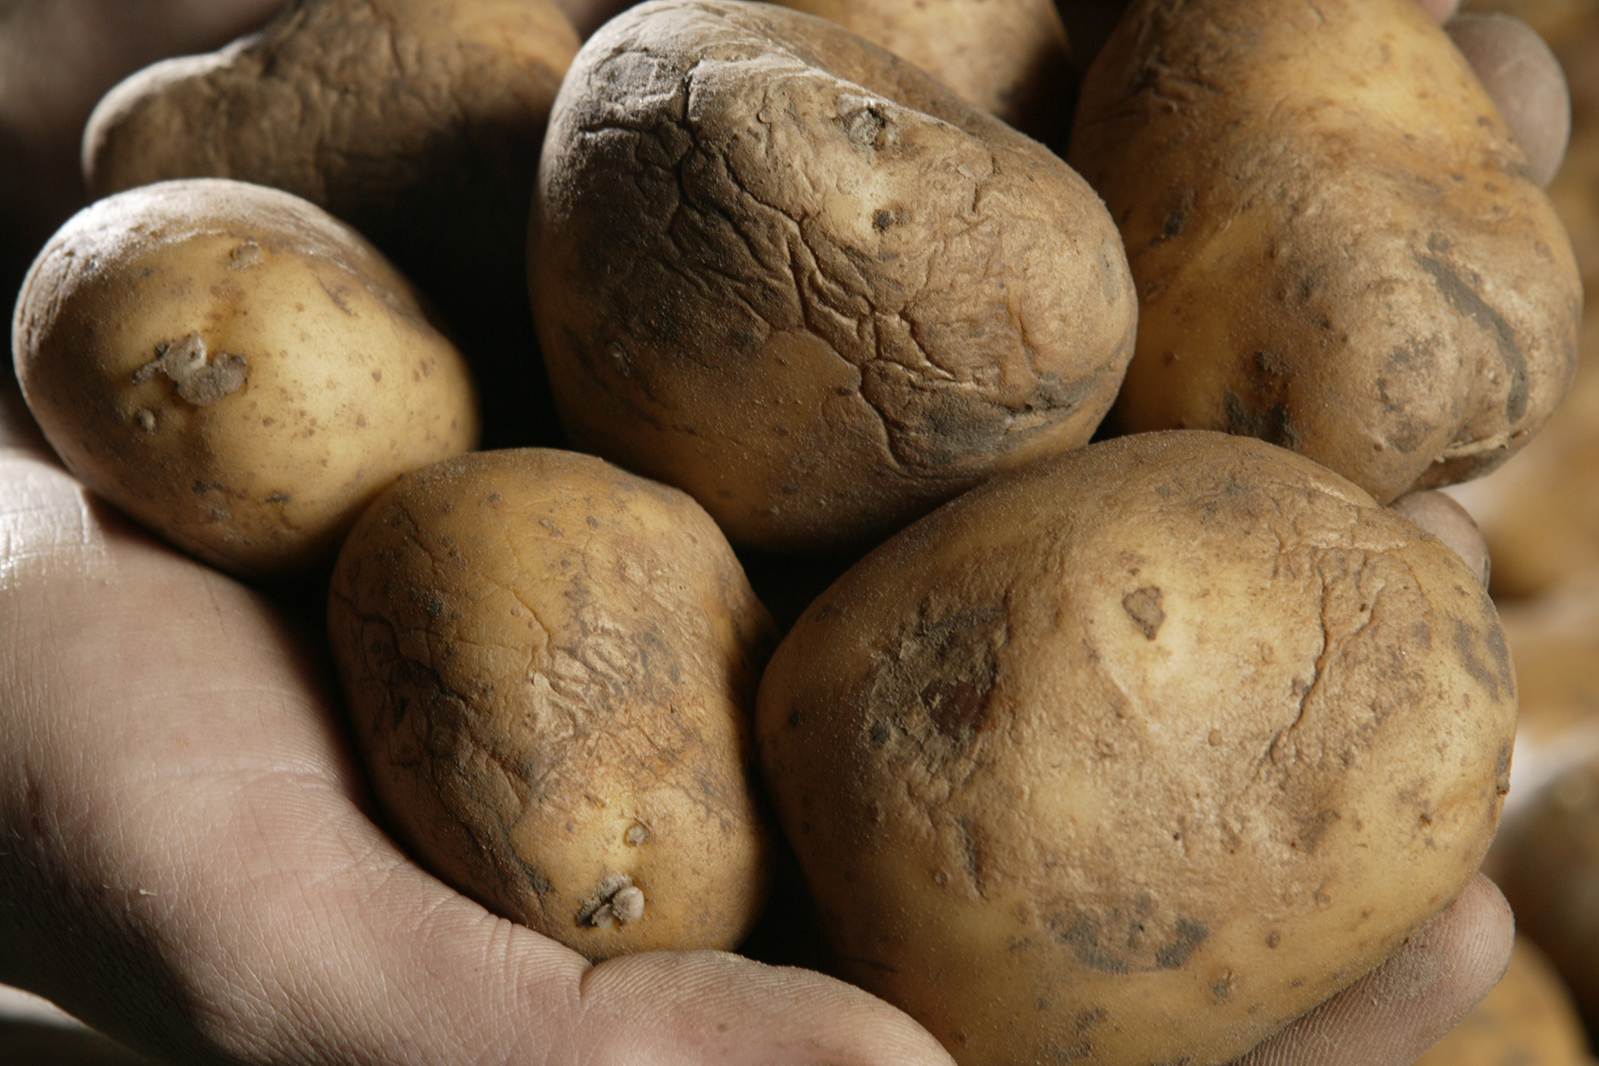 Door zilverschurft aangetaste aardappelen. - Foto: Mark Pasveer